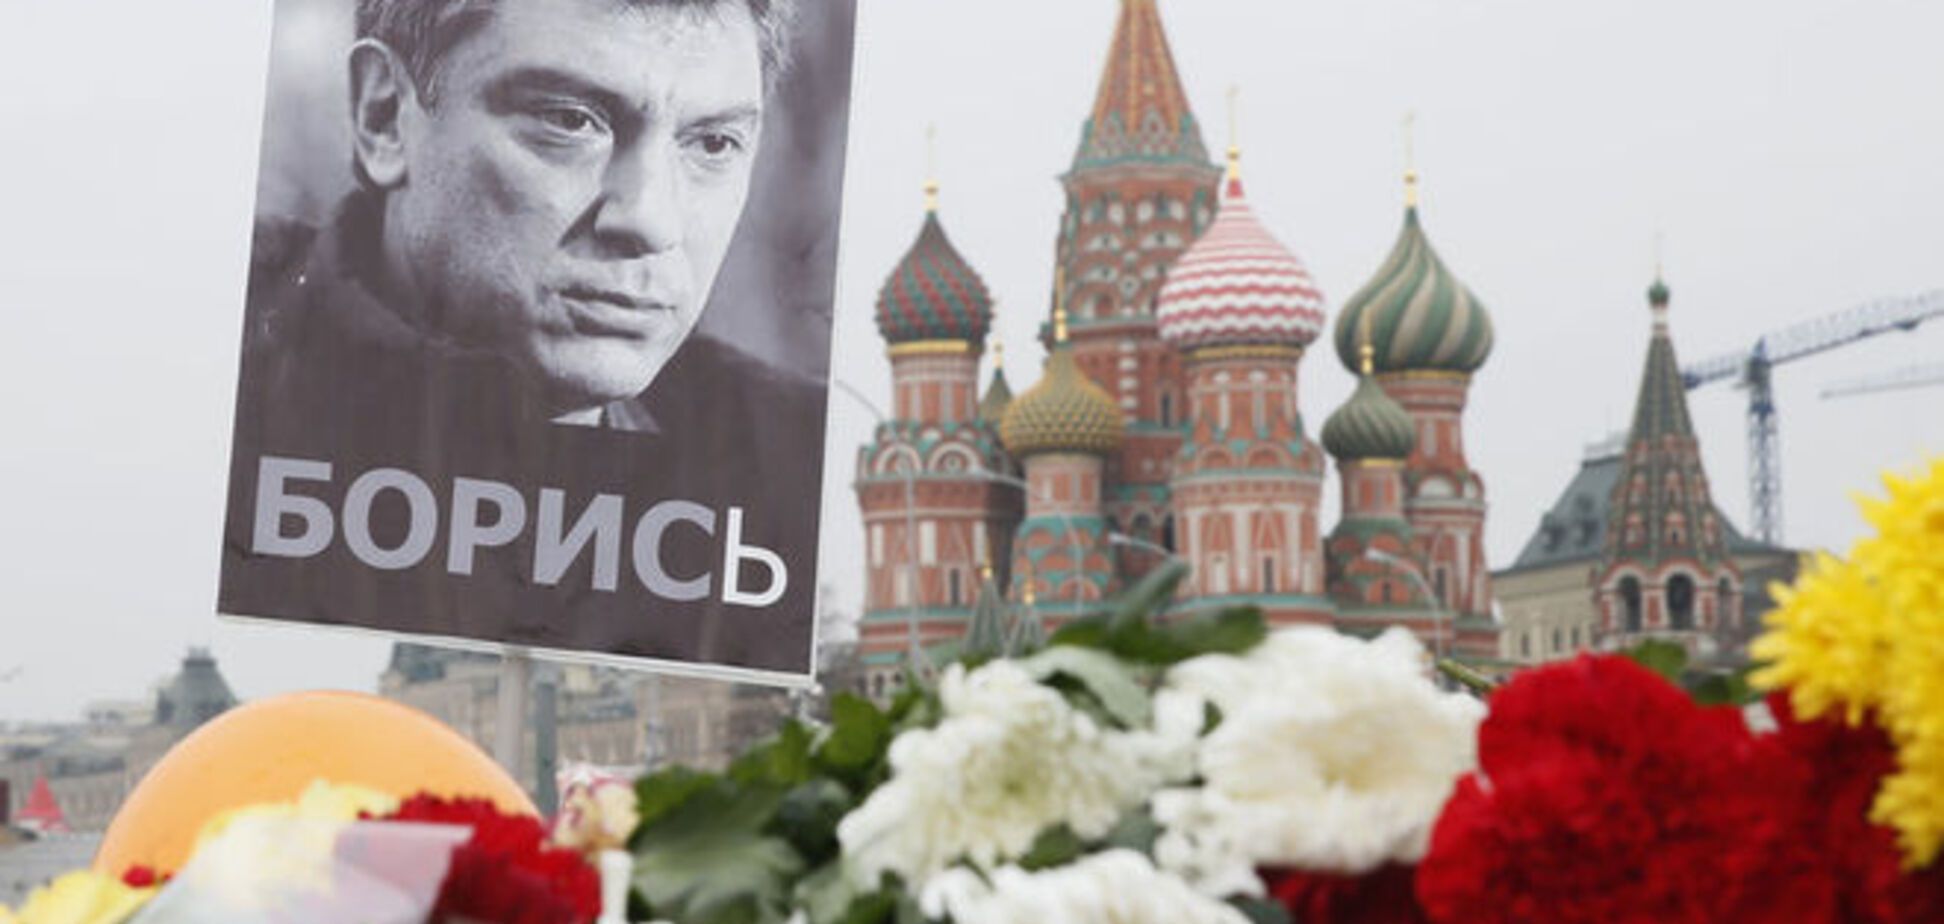 ЗМІ: підозрюваного у вбивстві Нємцова, можливо, немає в живих